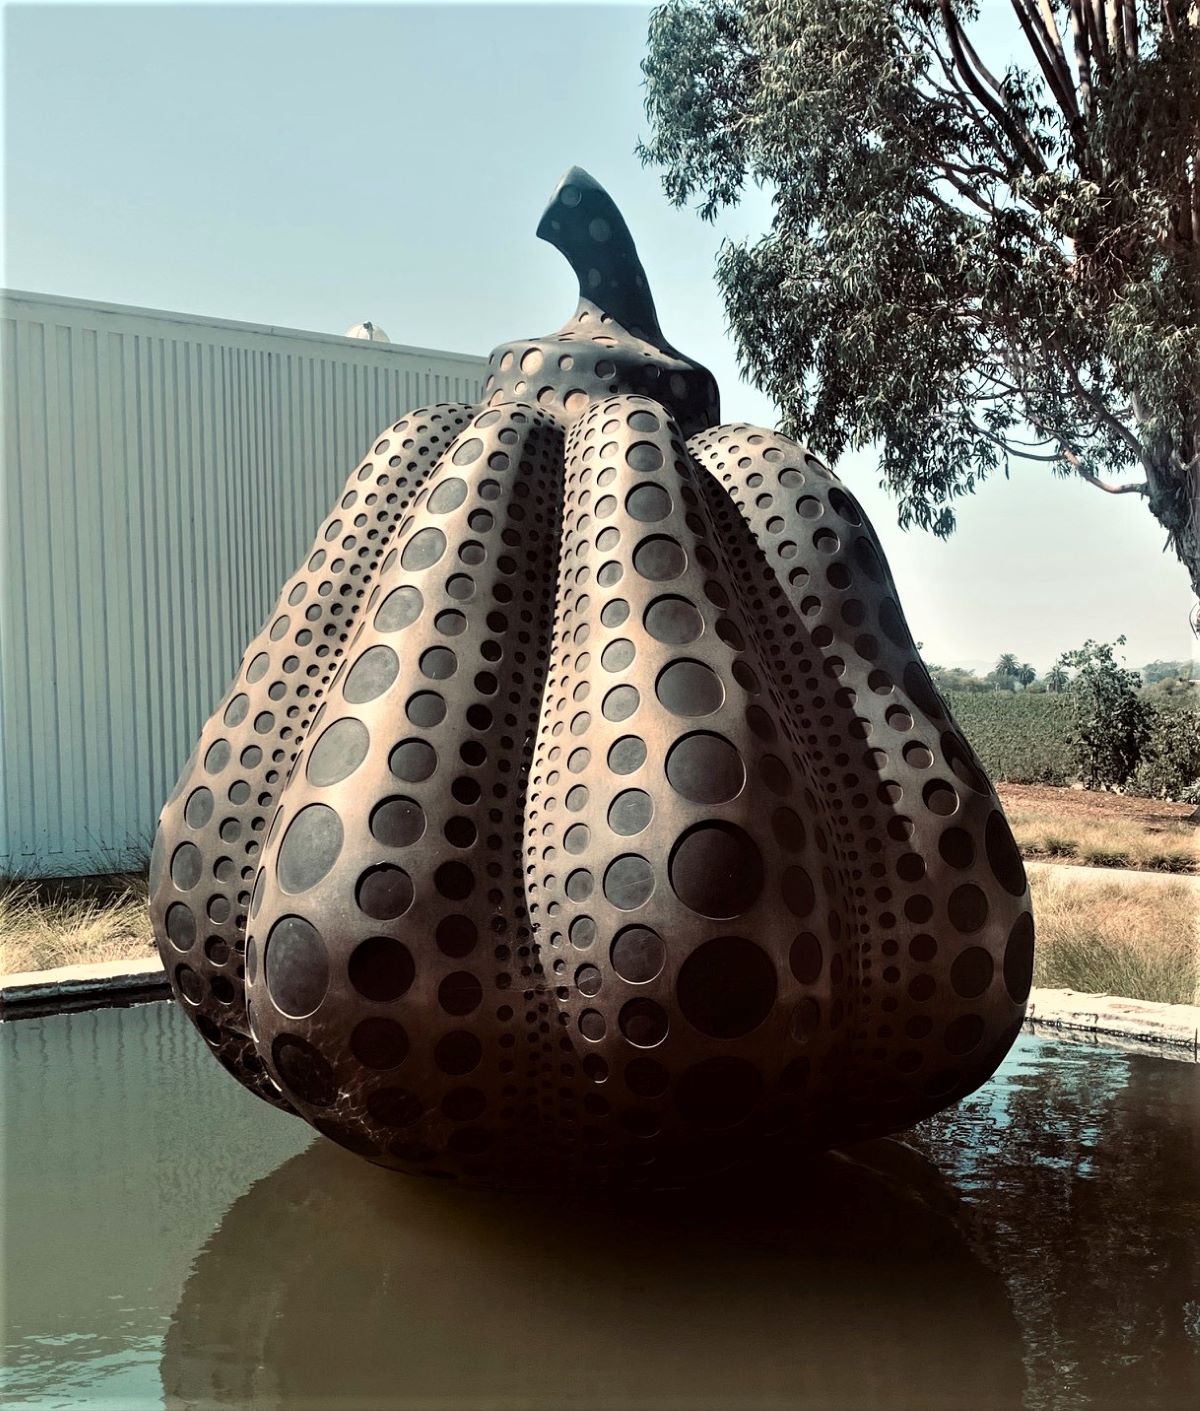 acorn sculpture